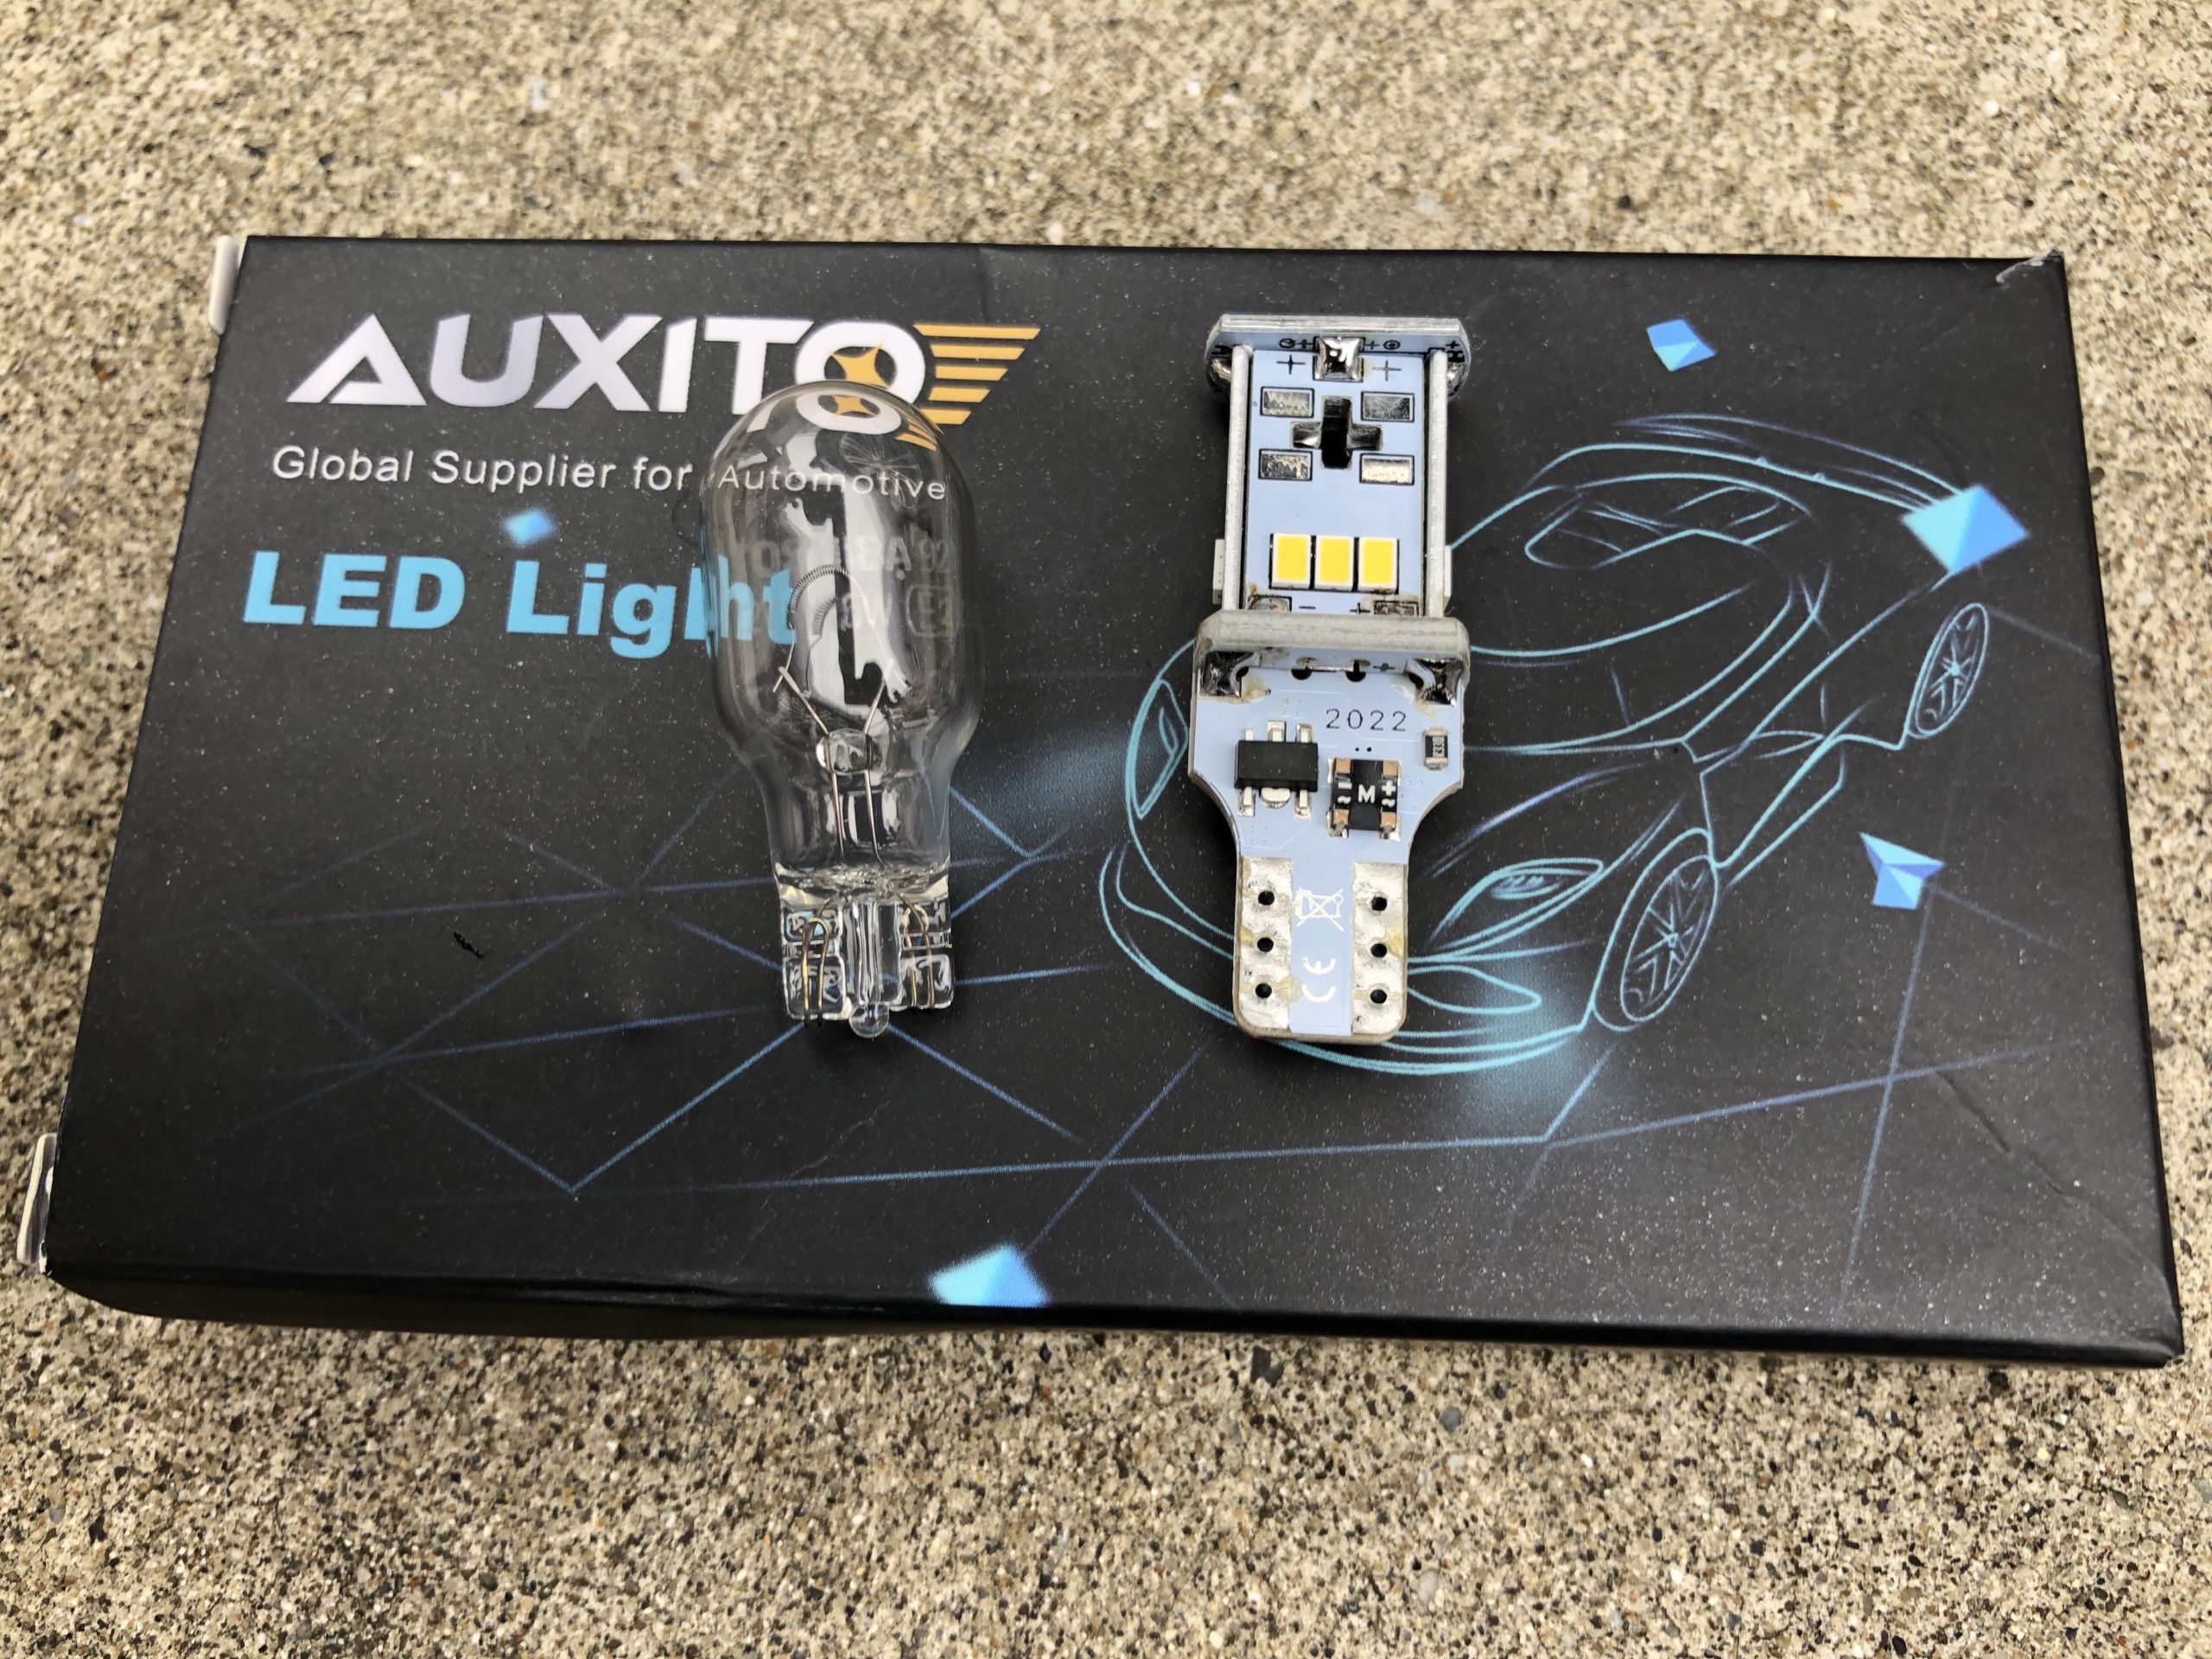 爆光】ダイハツキャストのバックランプ交換方法 -AUXITO T16 LED- こっチャネル